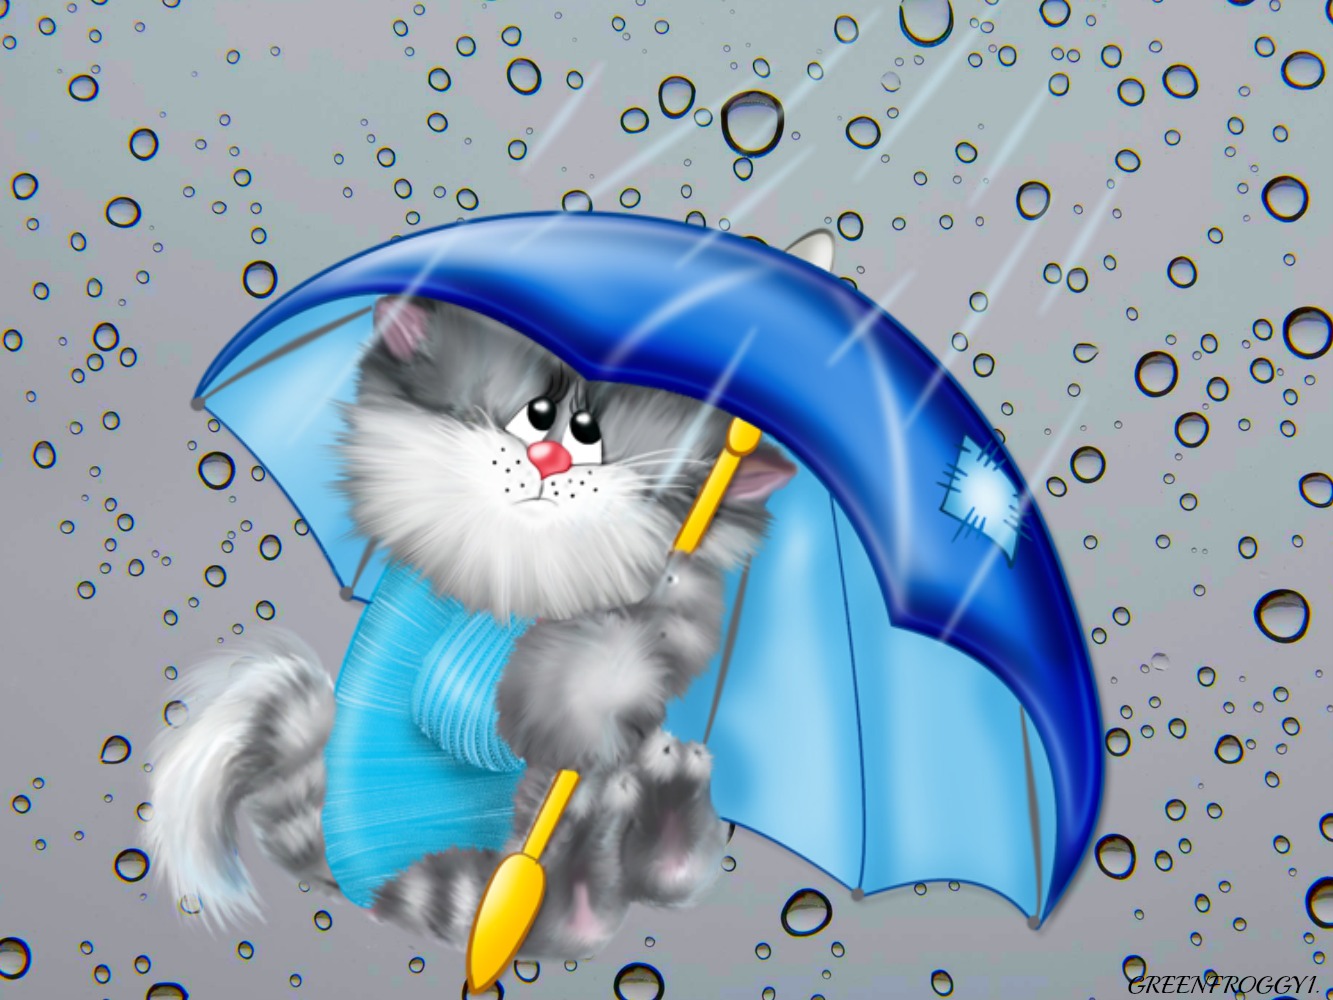 Скачать обои бесплатно Животные, Дождь, Кот, Художественный картинка на рабочий стол ПК